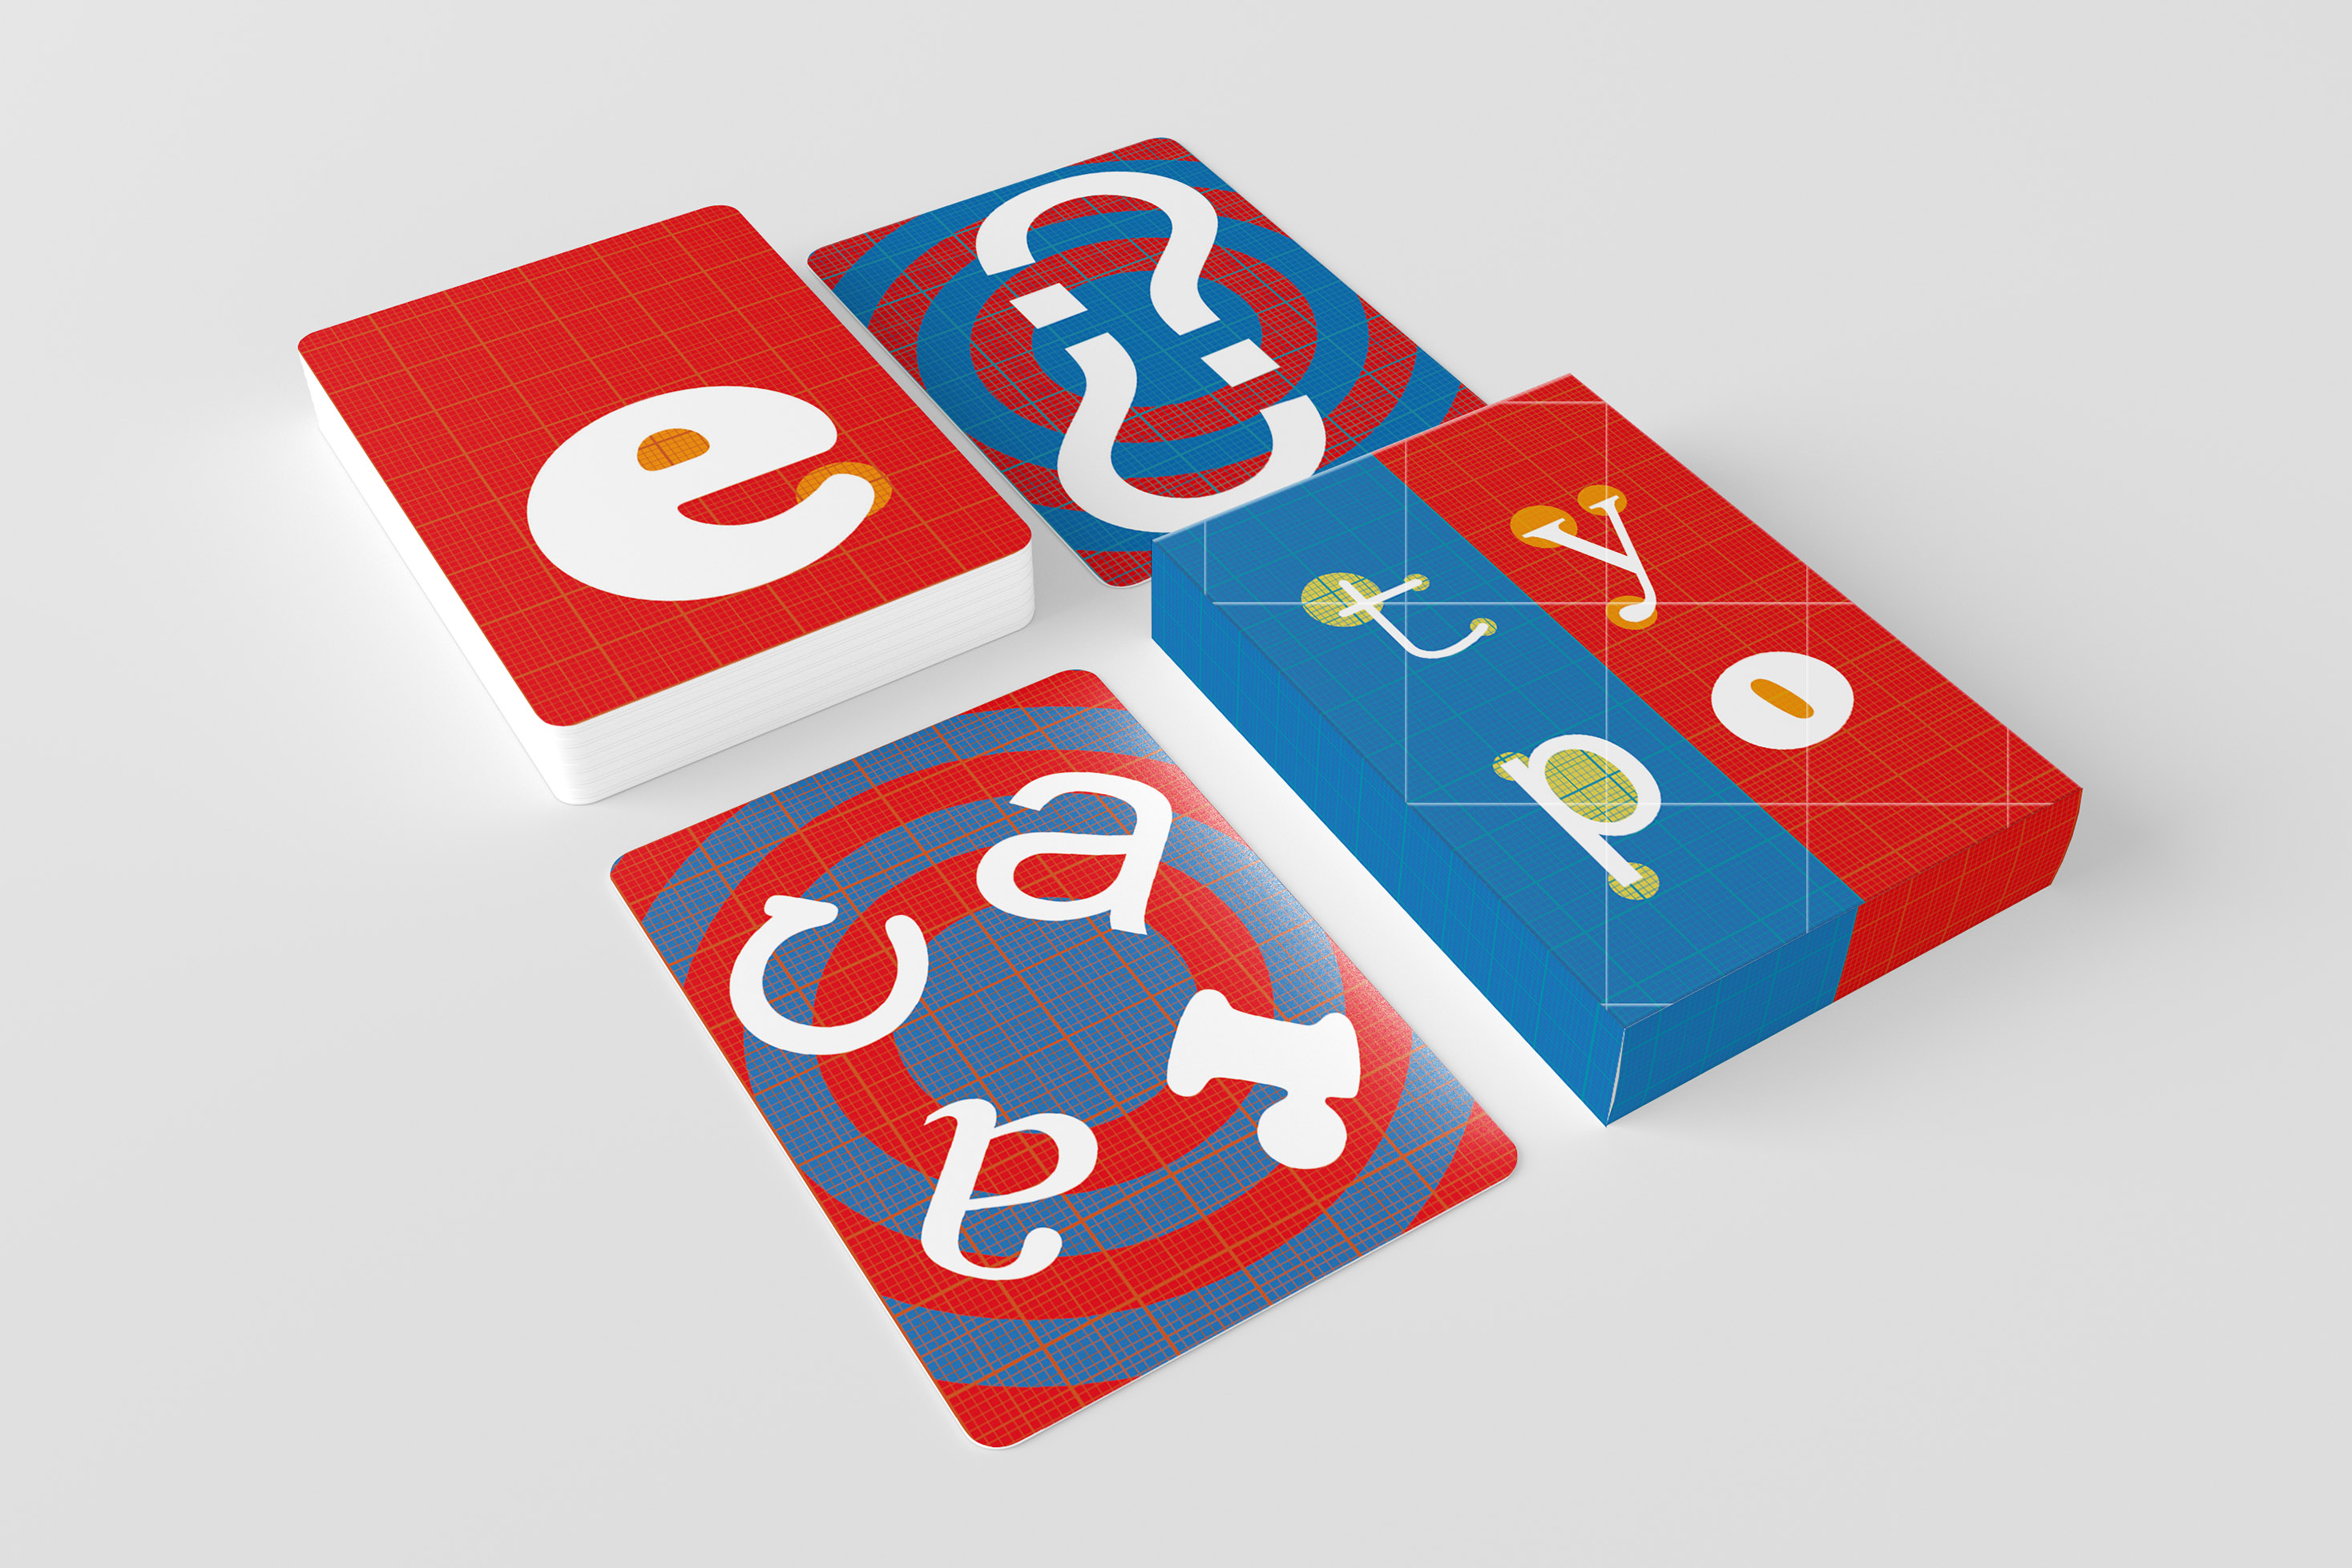 maquette du jeu de cartes contenant la boite et trois cartes